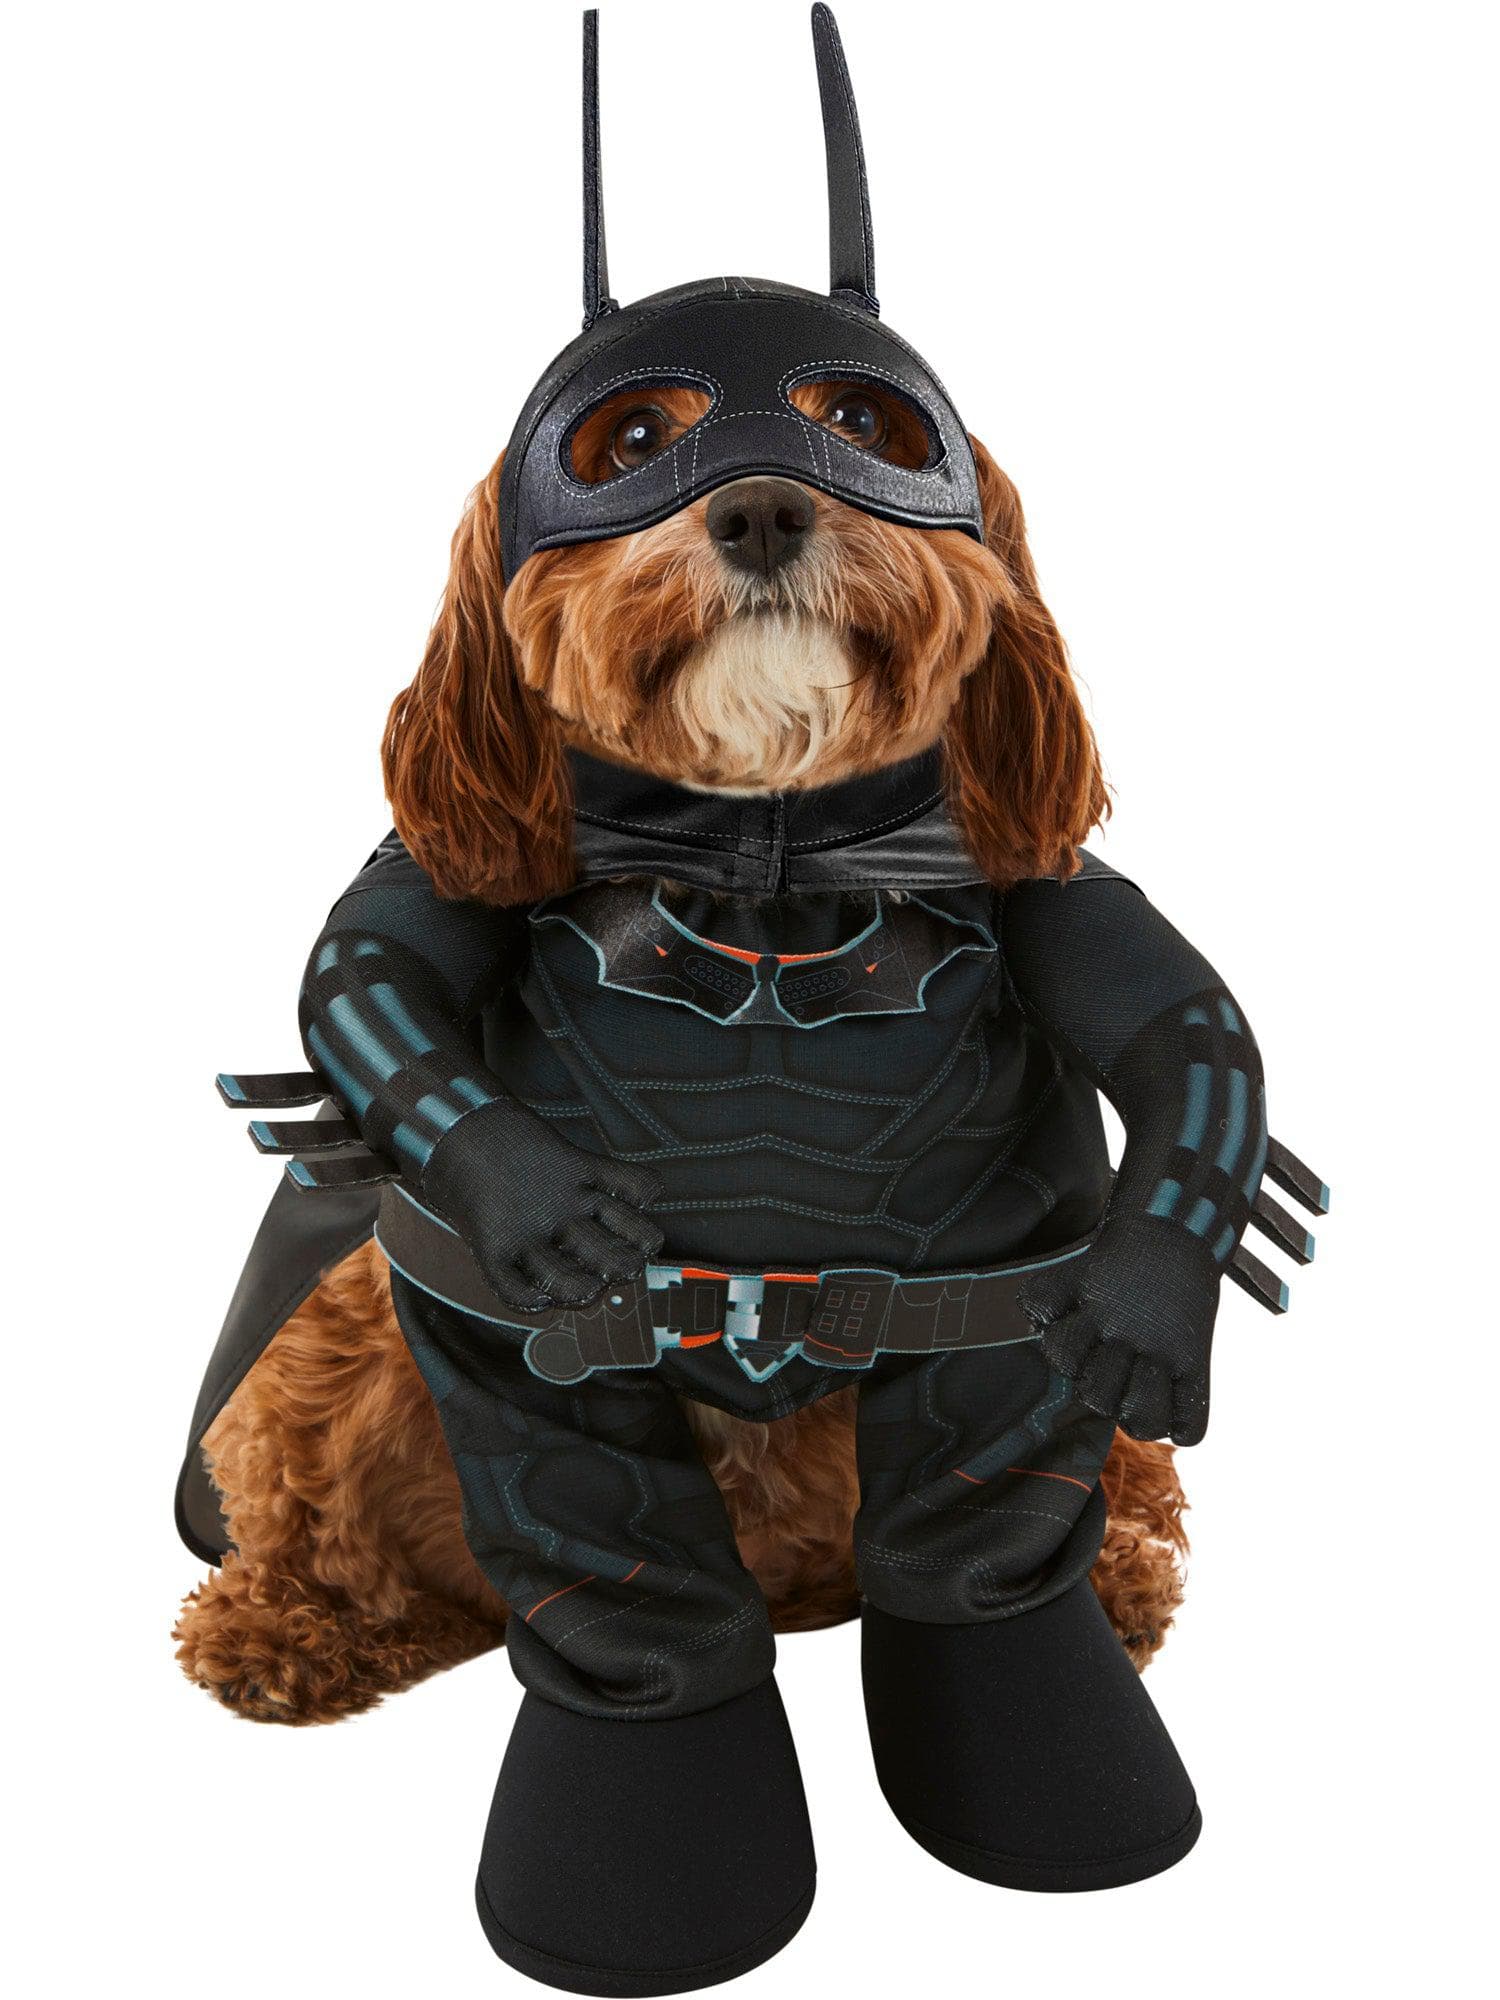 The Batman Pet Costume - costumes.com